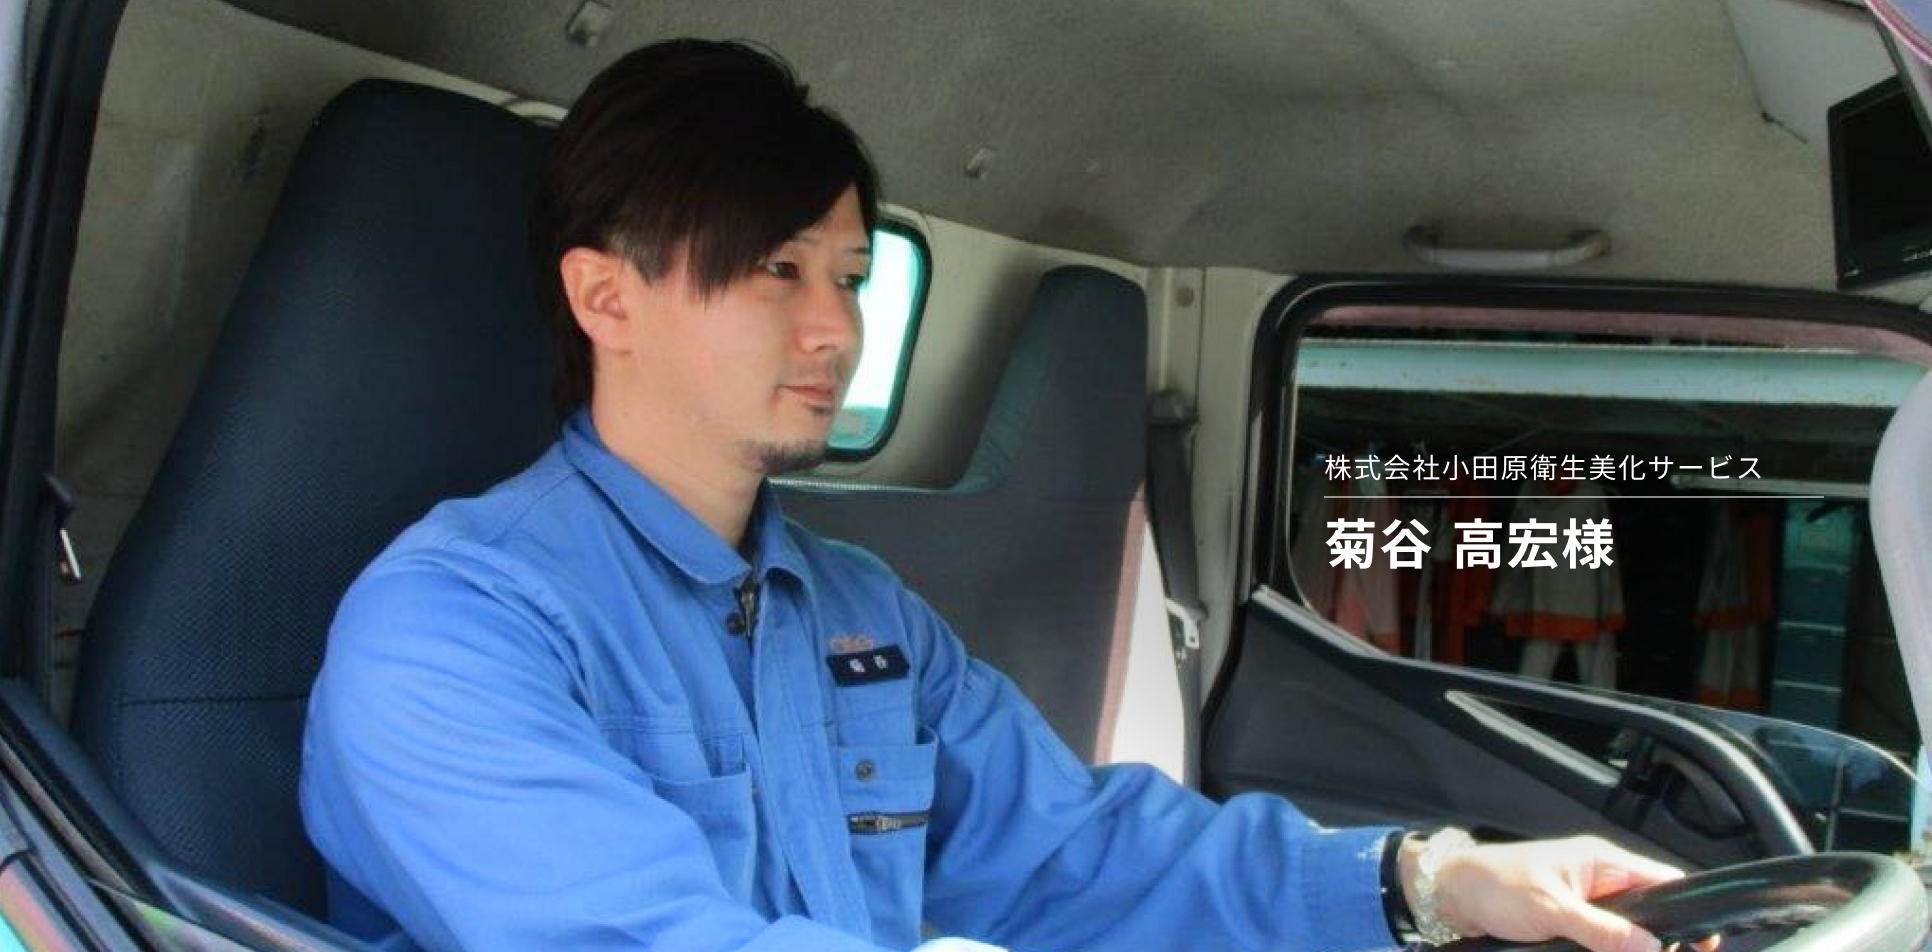 基本動作が安全運転につながる。小田原衛生美化サービスのドライバーが高スコアを維持できる理由とは？